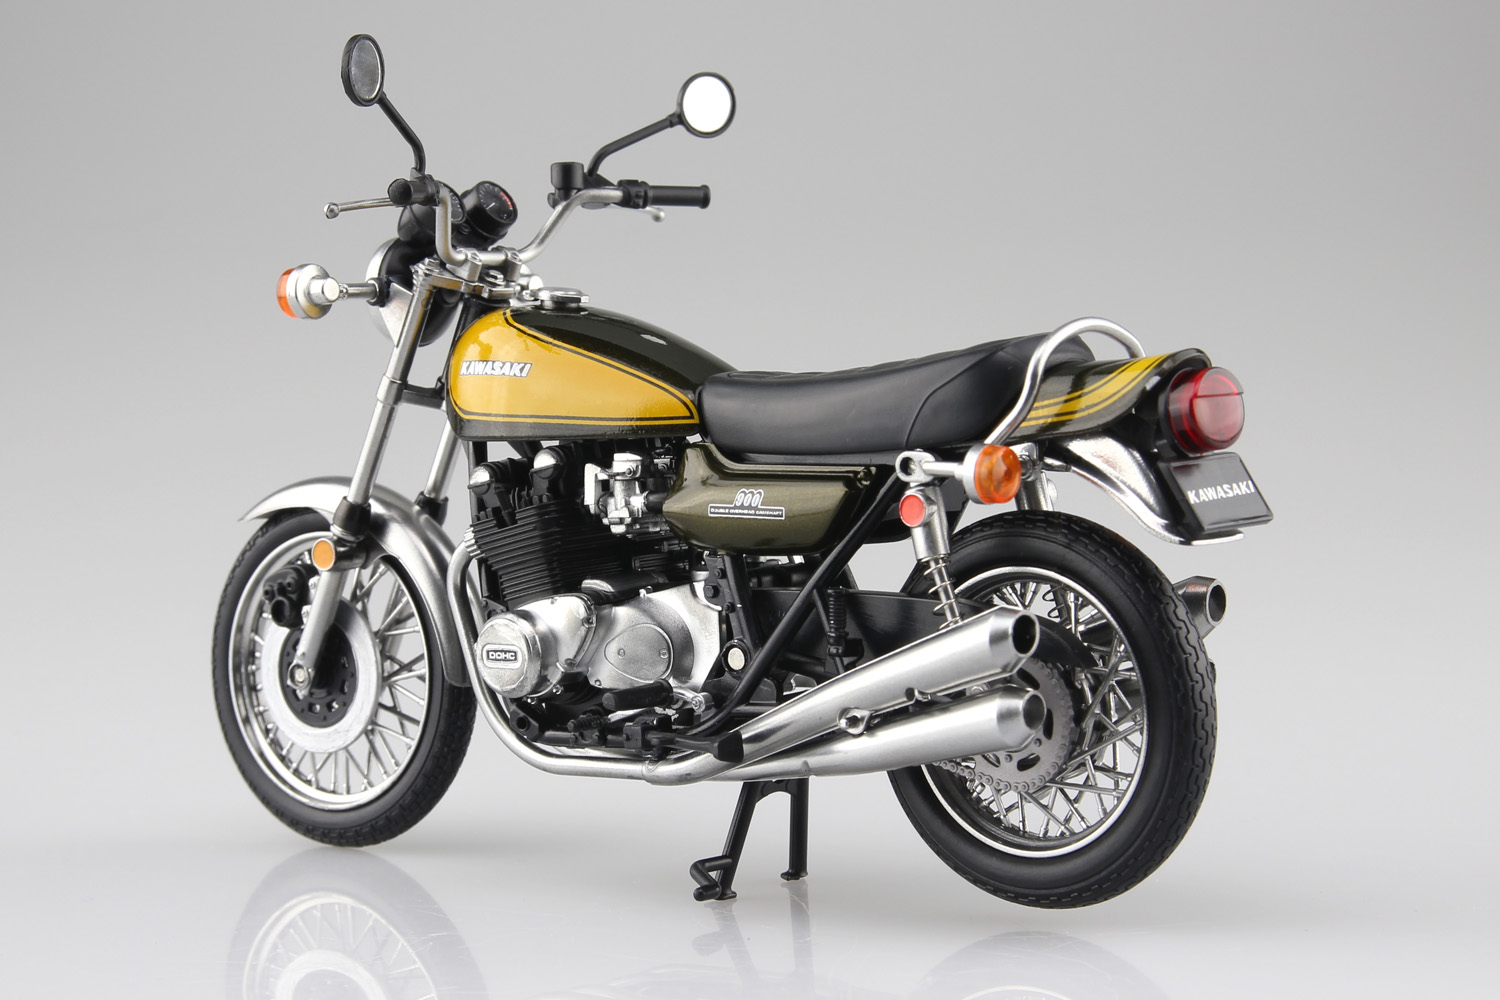 アオシマの1/12 完成品バイクシリーズに『Z1』と『Z2』がリニューアル